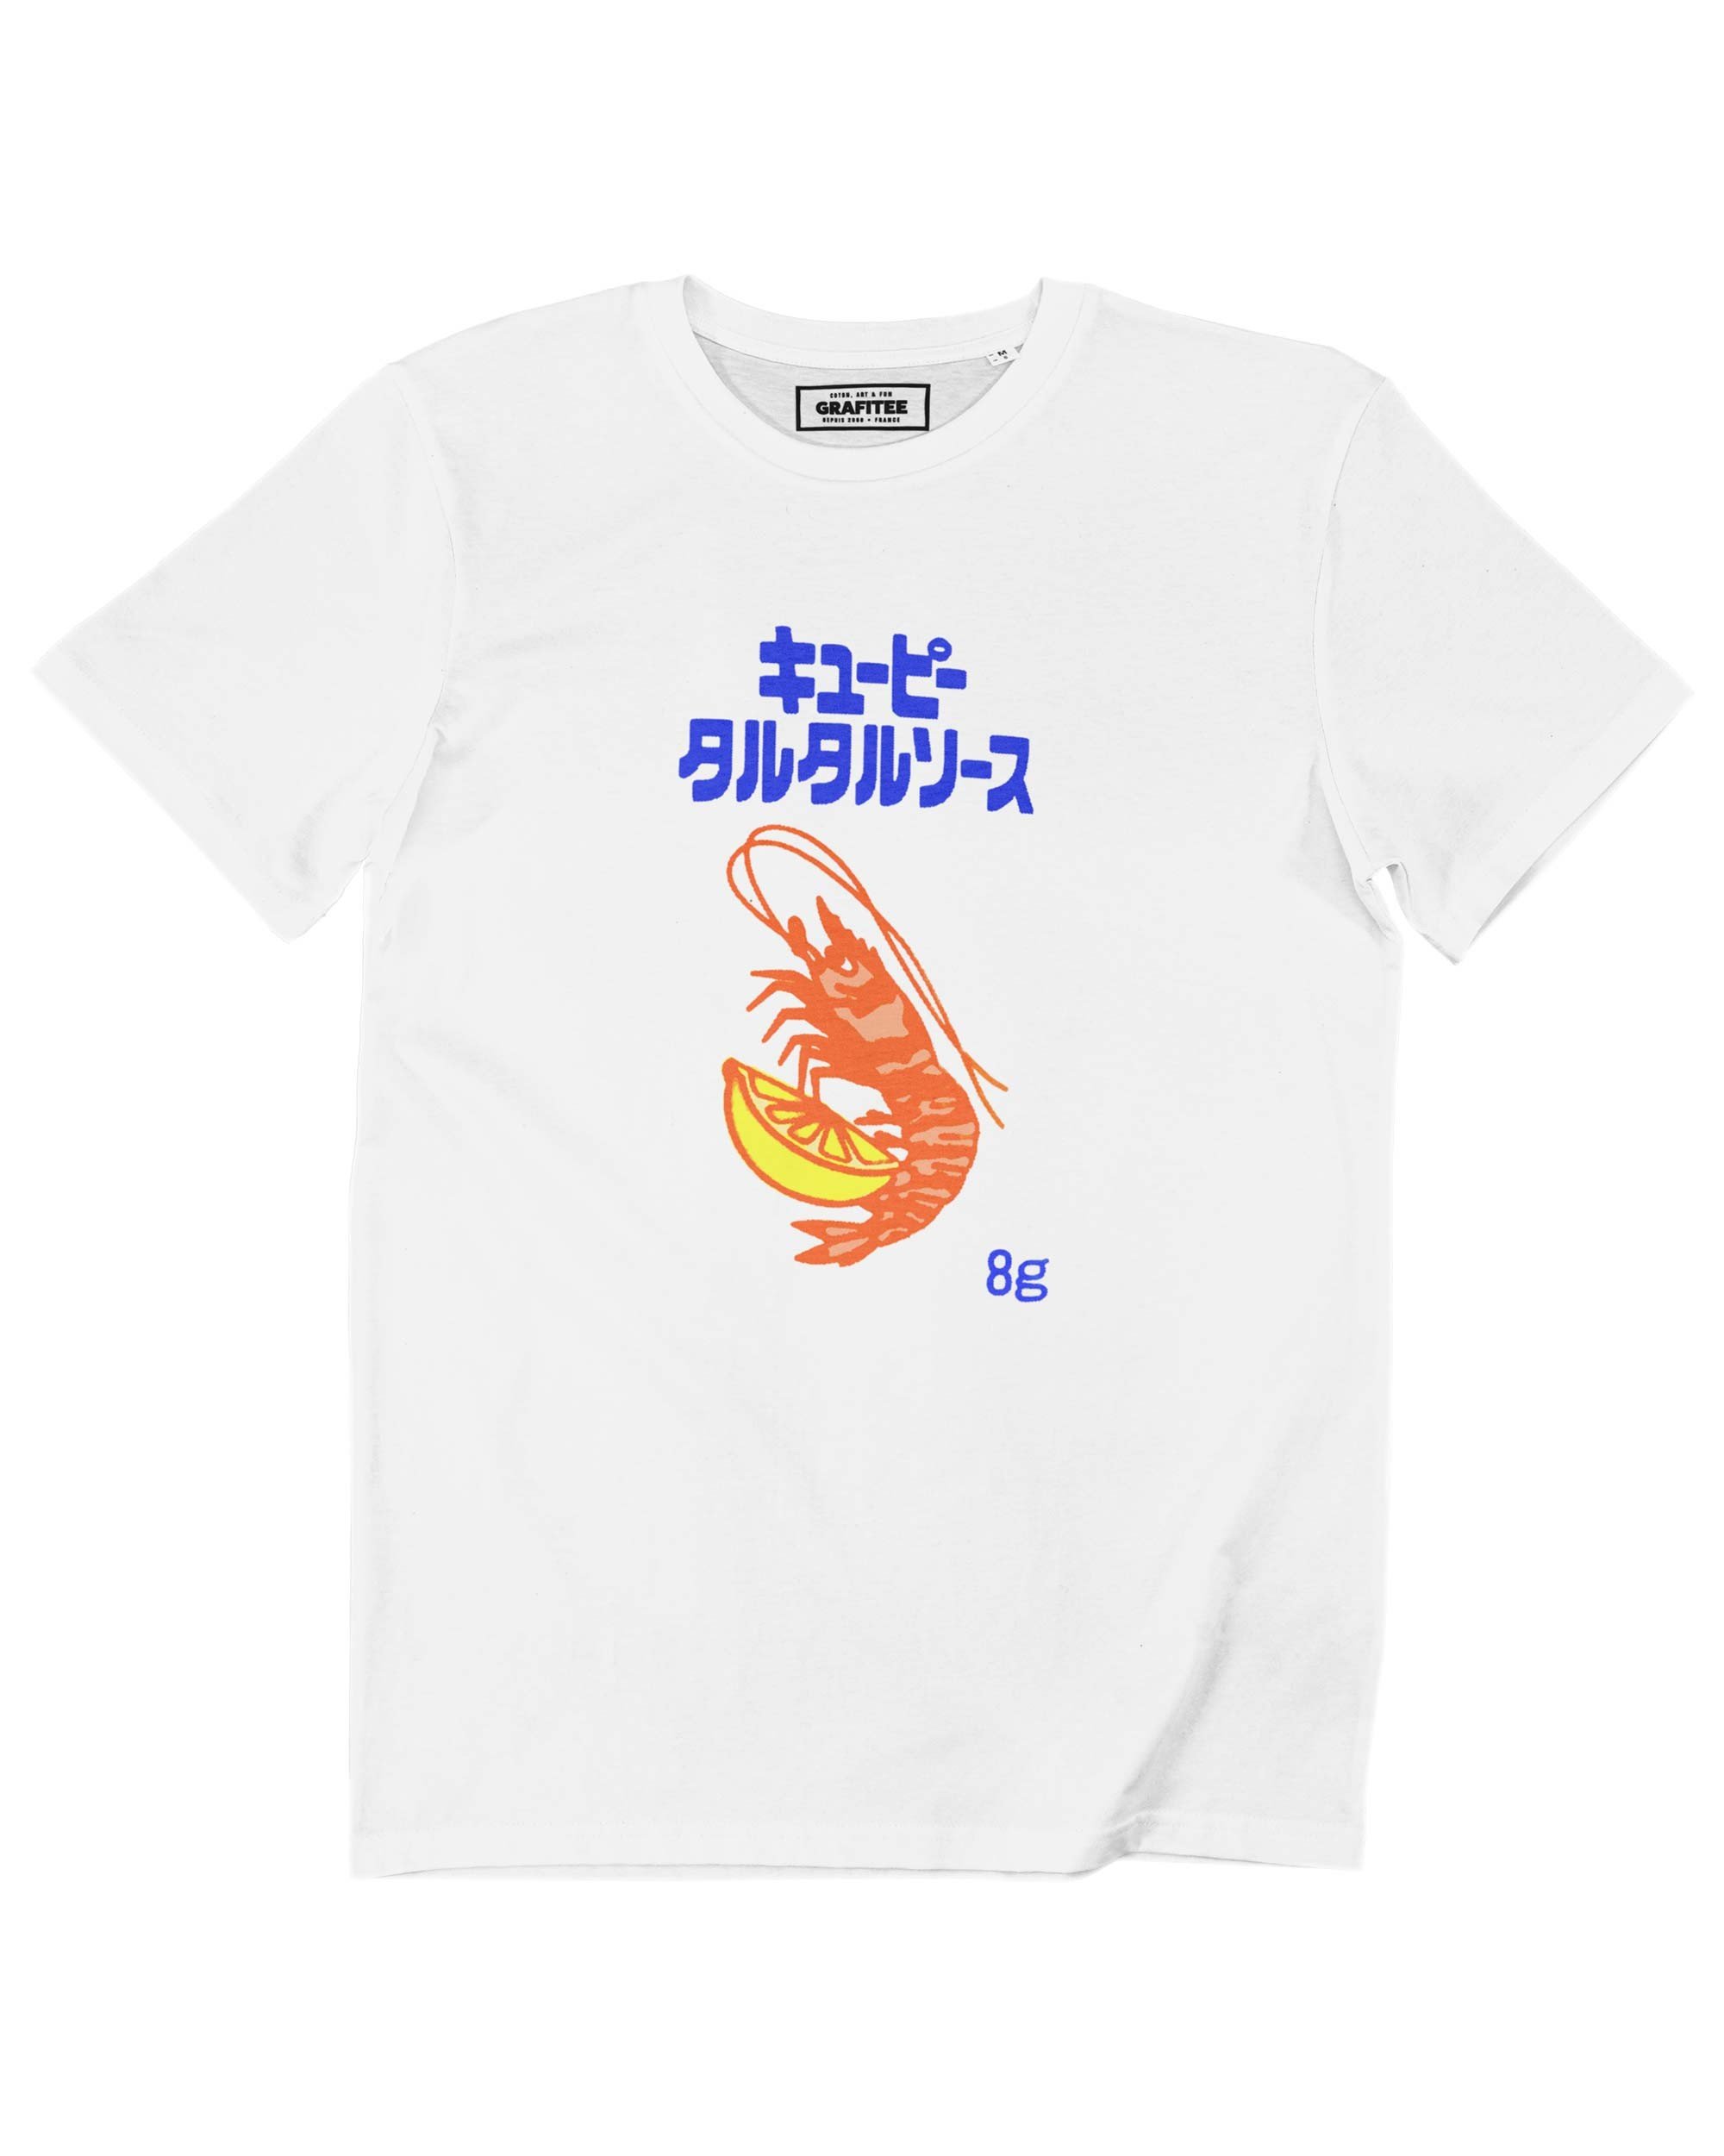 T-shirt Shrimp Grafitee